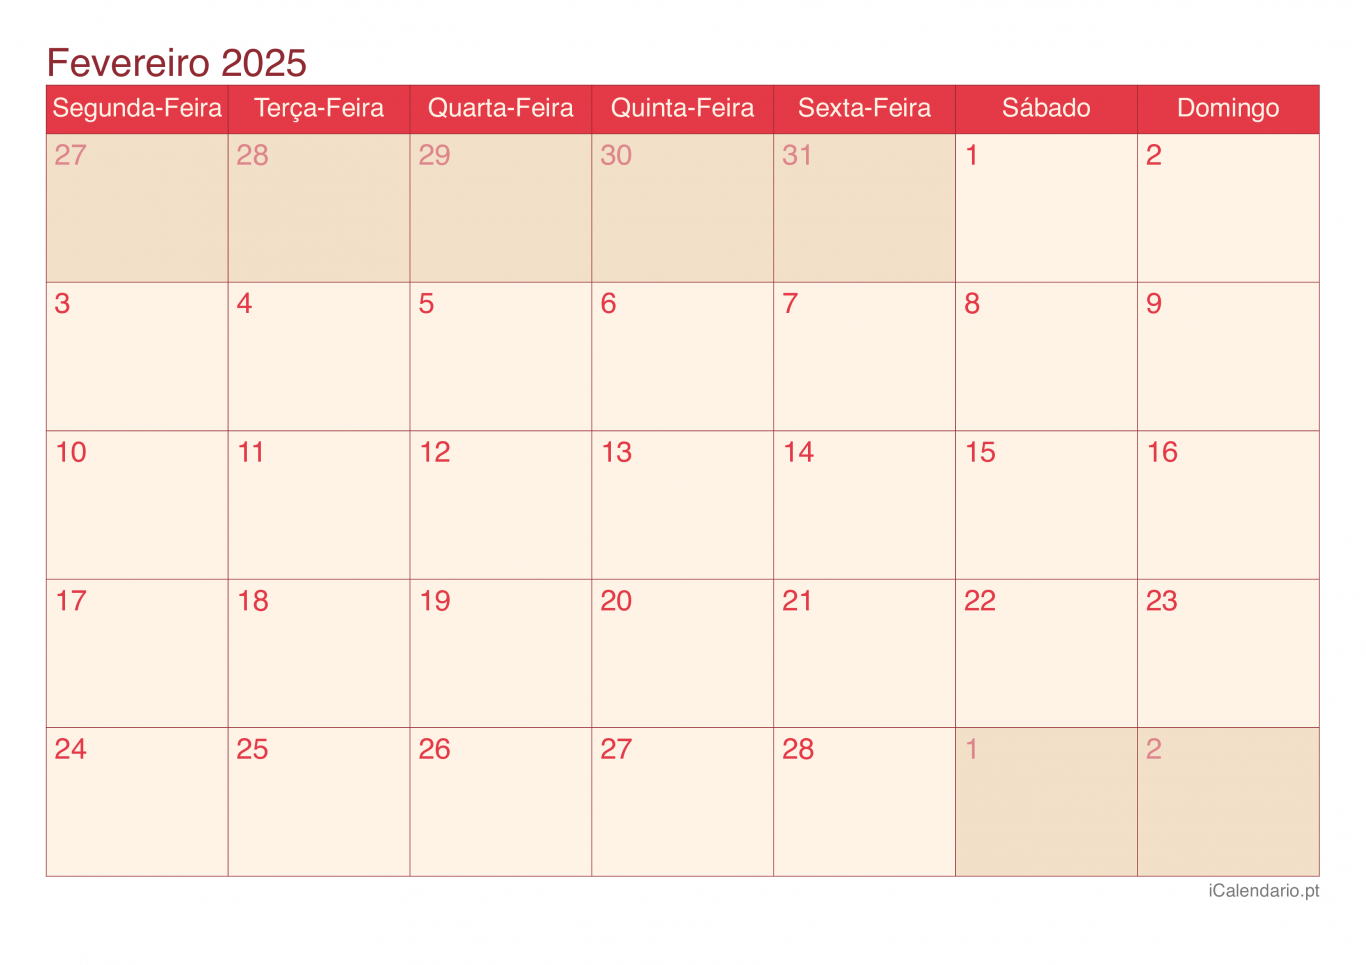 Calendário de fevereiro 2025 - Cherry